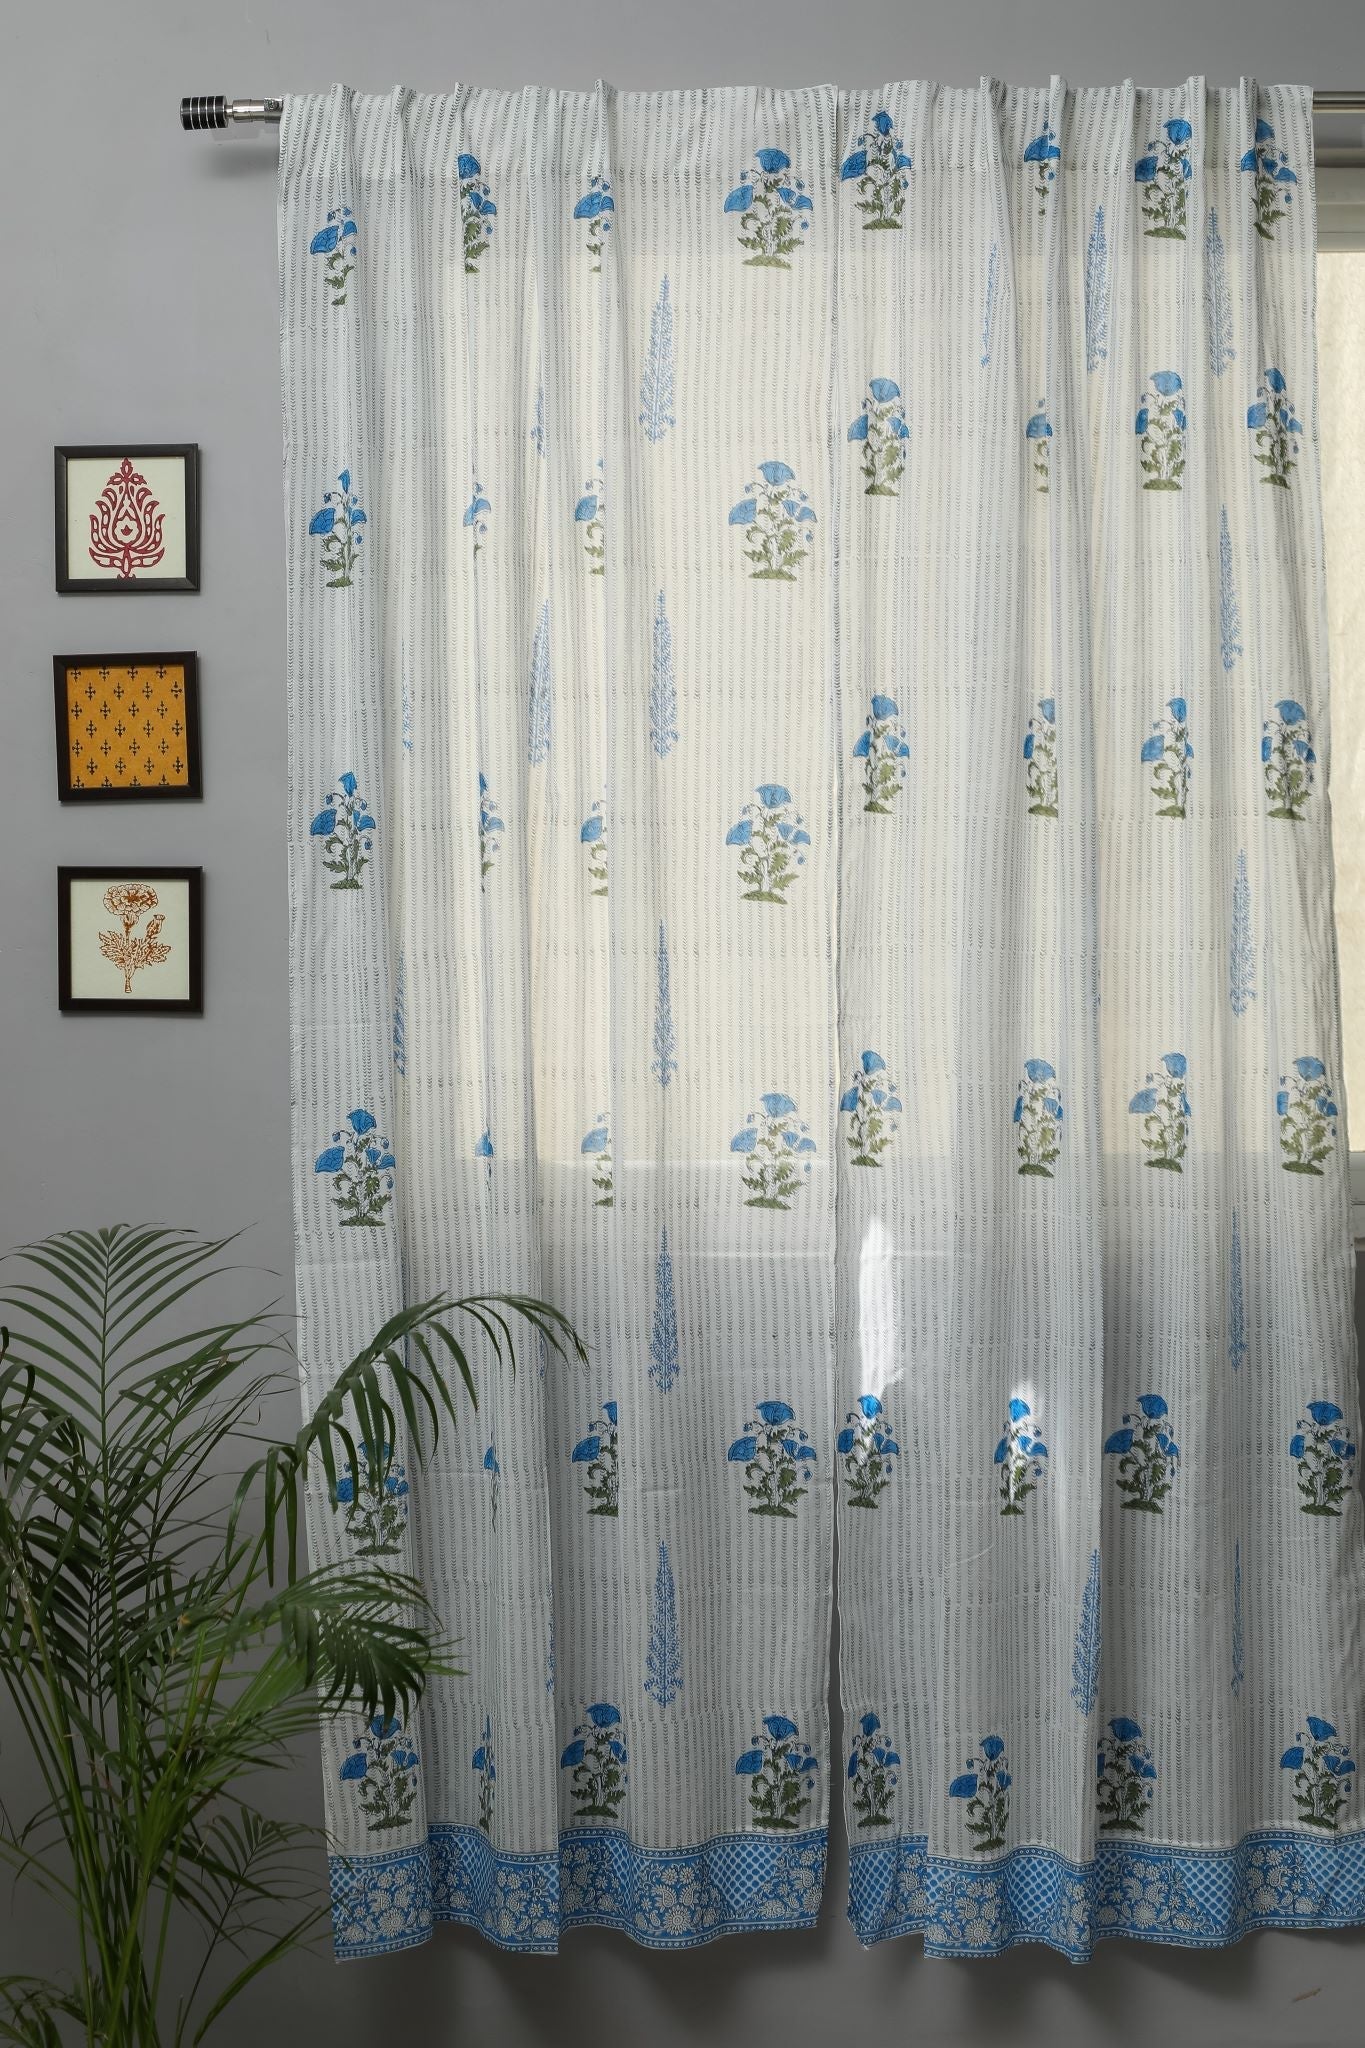 SootiSyahi 'Coral Blue' Handblock Printed Cotton Door Curtain - SootiSyahi